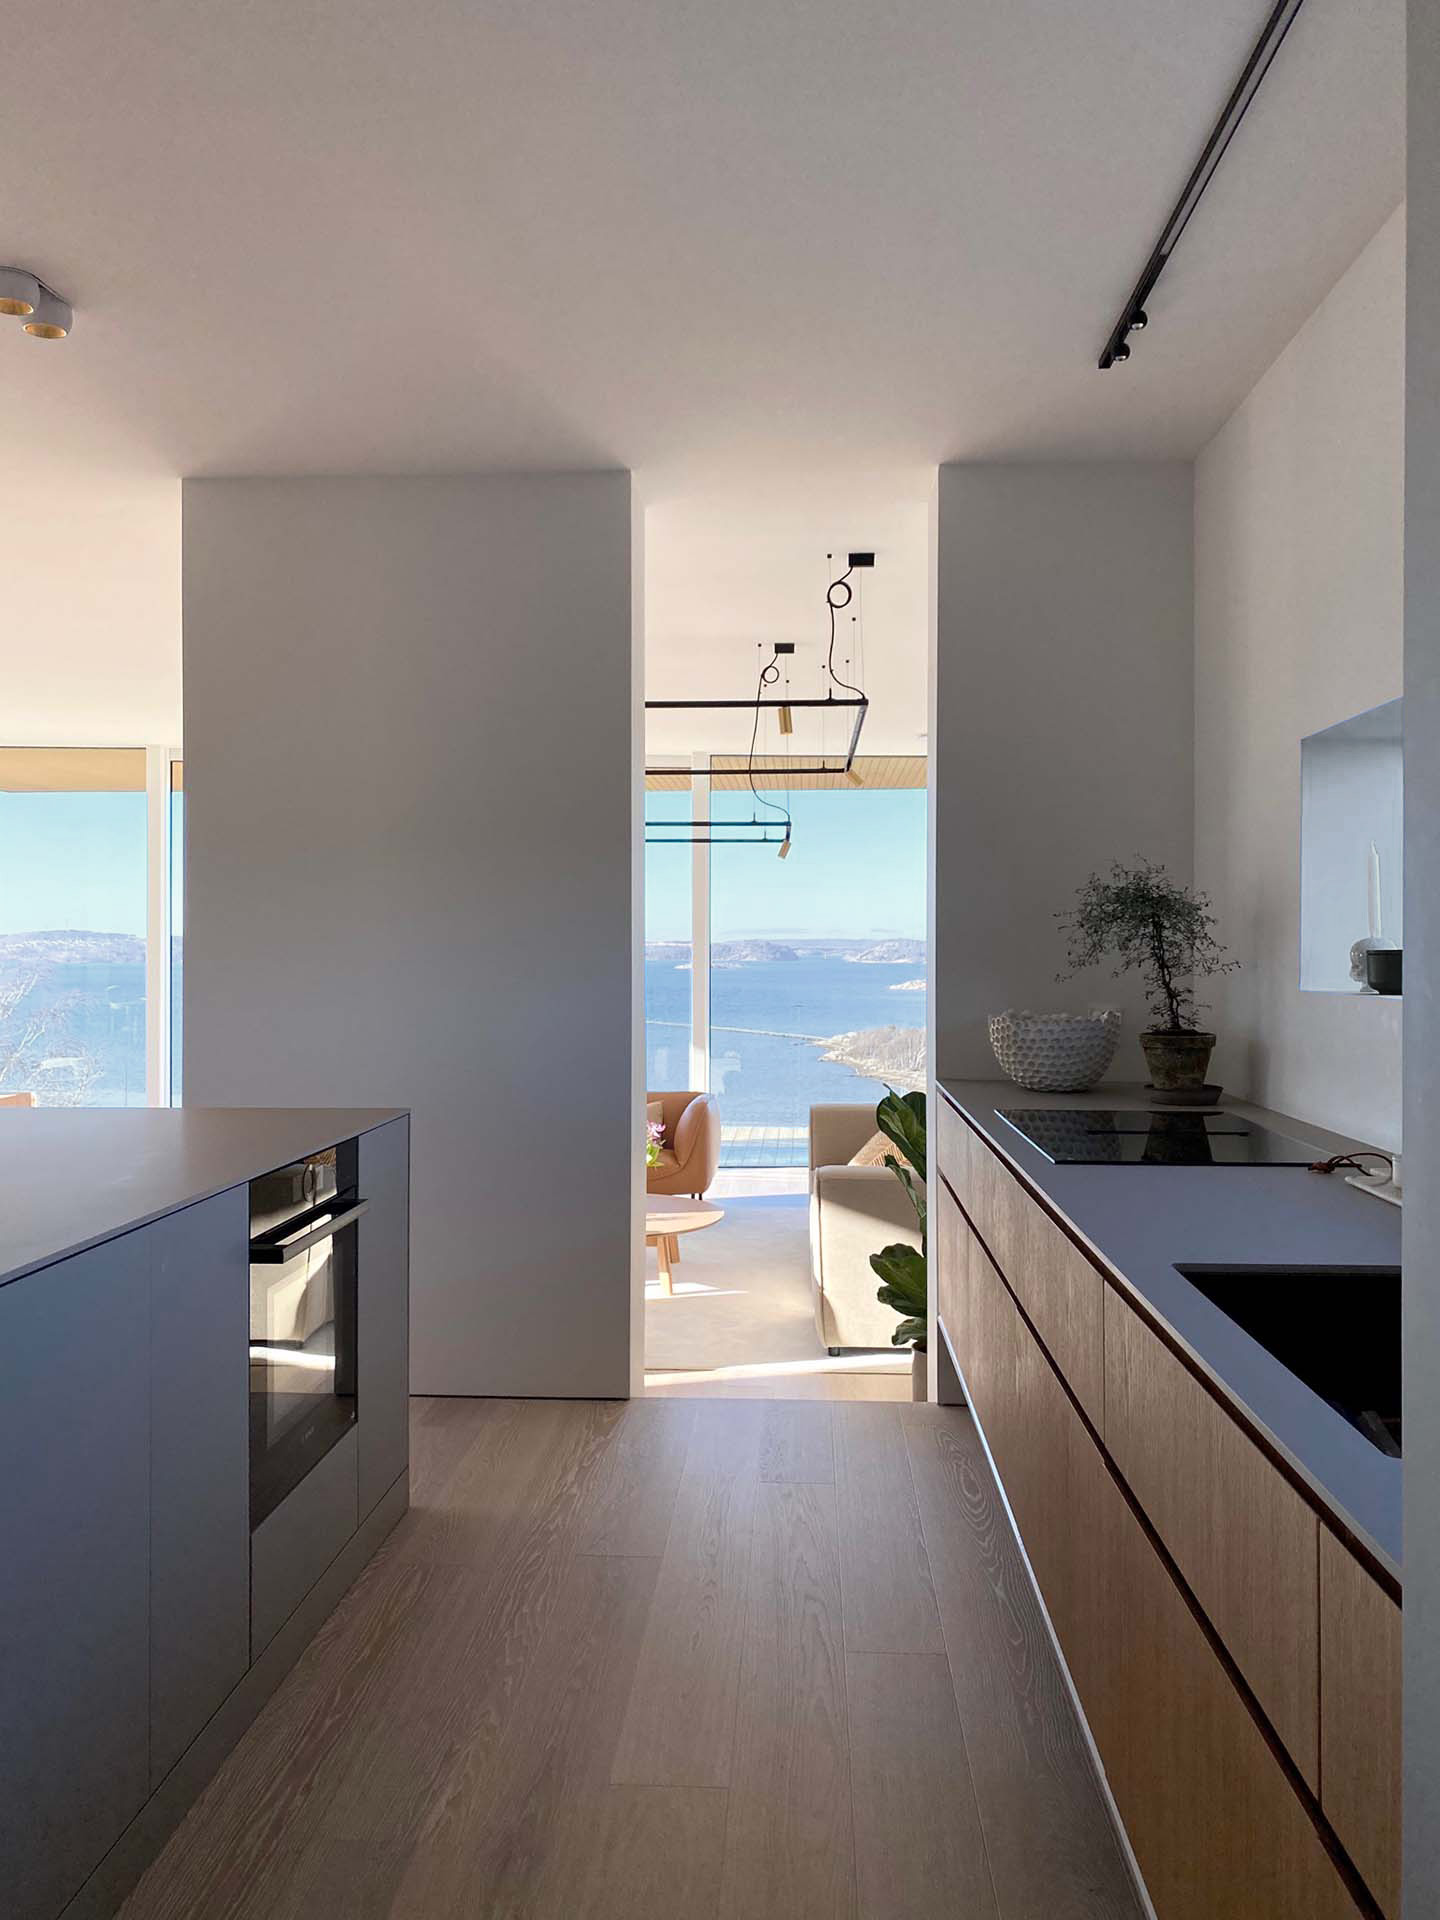 Stiligt - Ett kök med utsikt över havet i Villa Fernström.